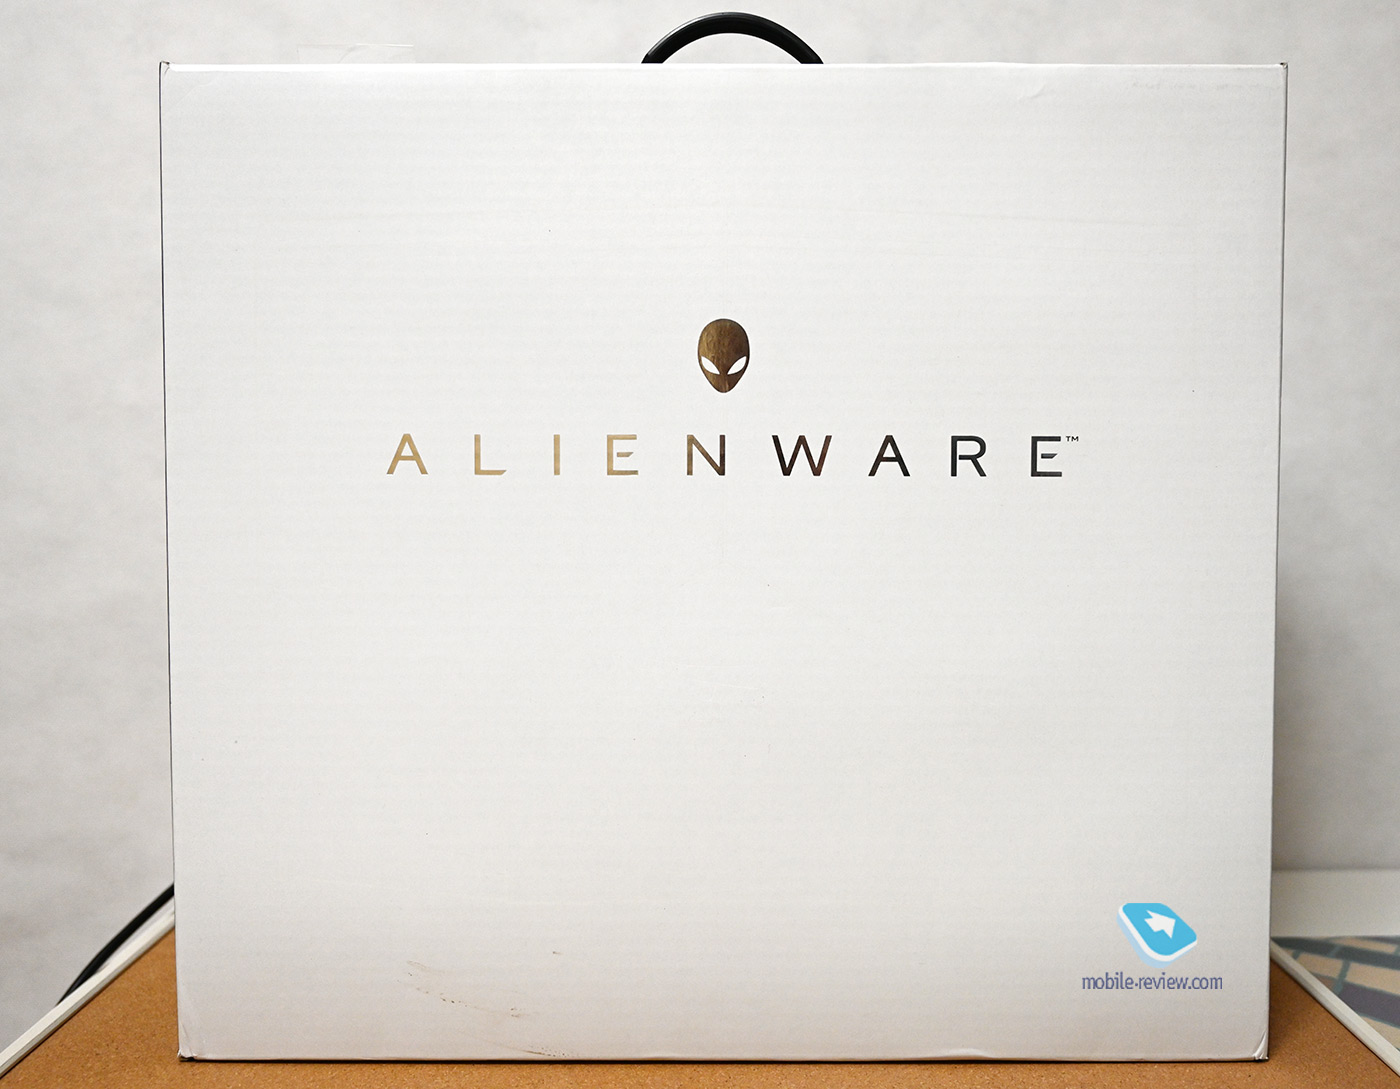  :  Dell Alienware M15